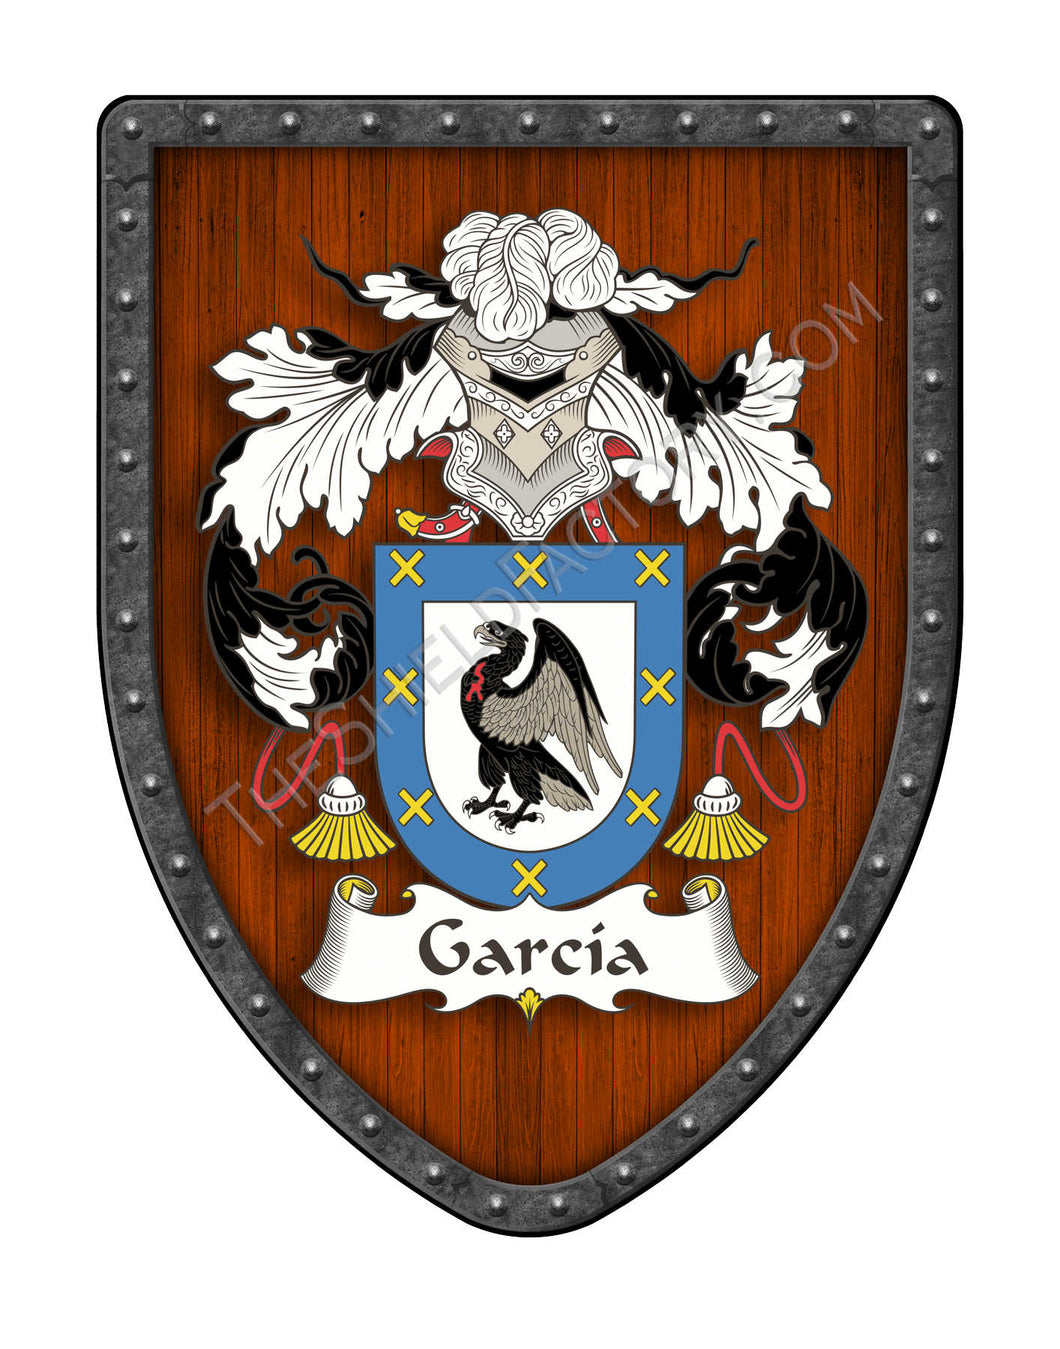 García III Coat of Arms Shield